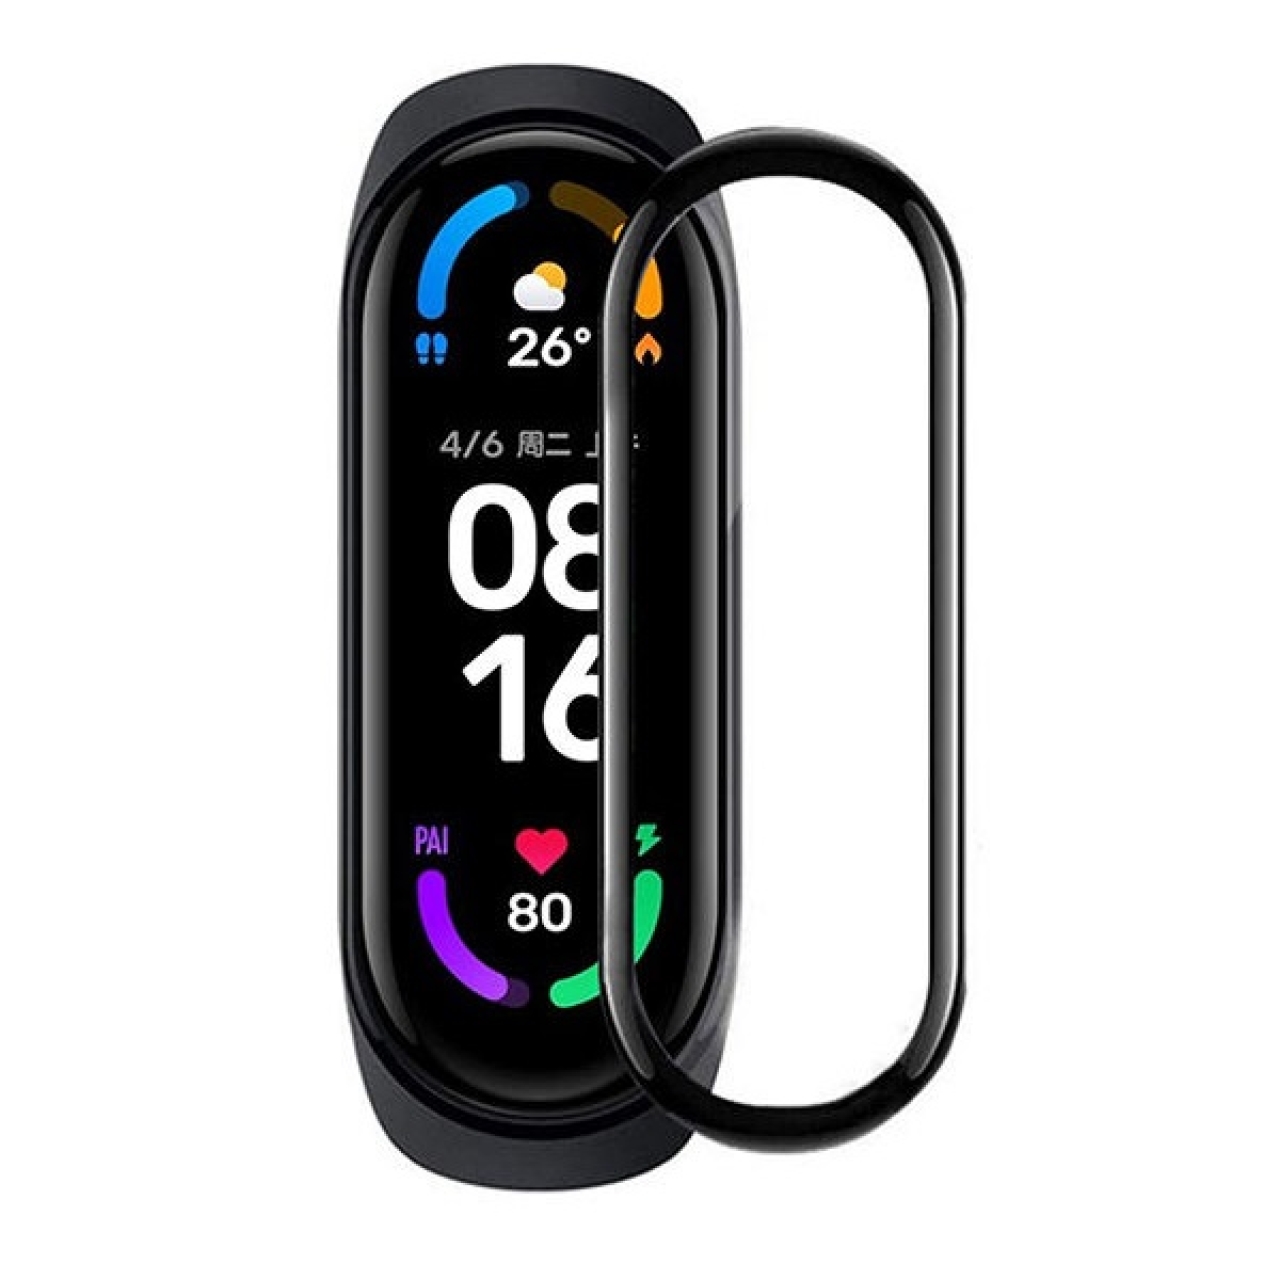 محافظ صفحه نمایش Mi6 مناسب برای ساعت هوشمند شیائومی Mi Band 6